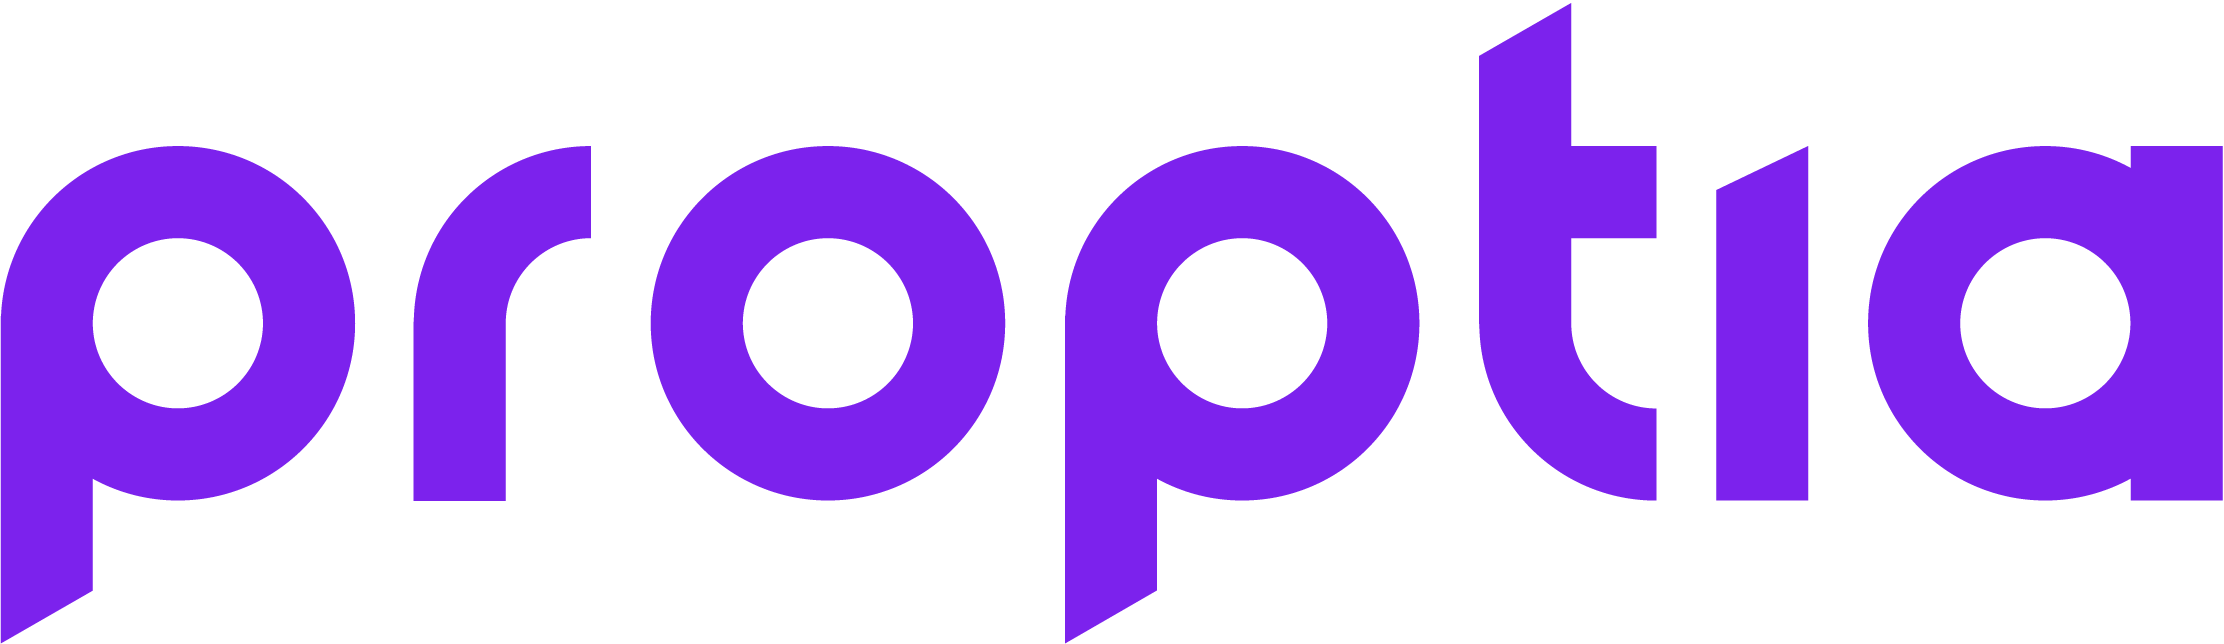 Proptia Logo